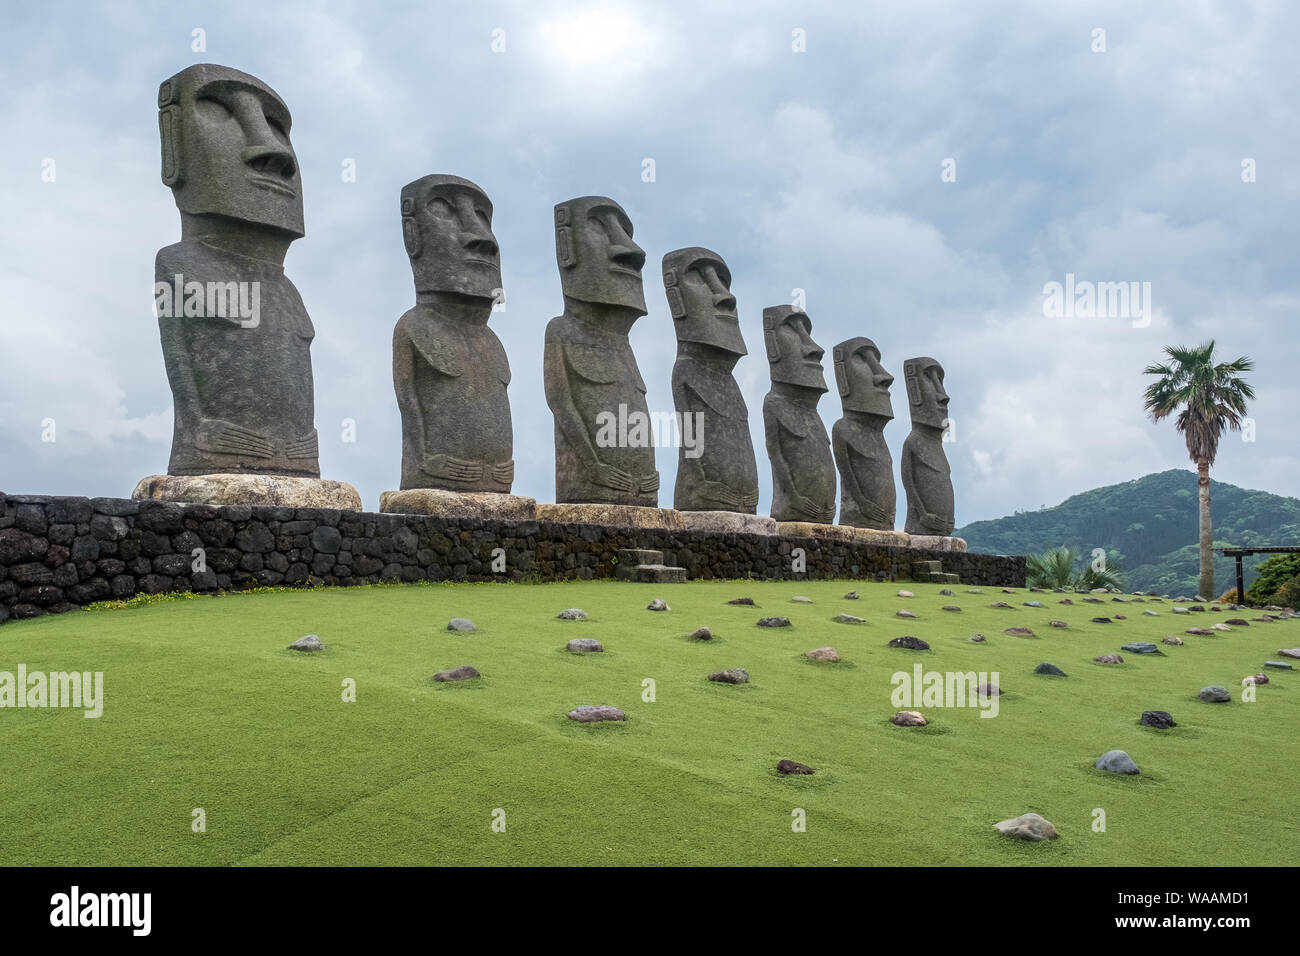 Ein Blick auf die sieben Replik der Osterinsel Moai Statuen bei Sun Messe Nichinan in Miyazaki Präfektur, Kyushu, Japan Stockfoto